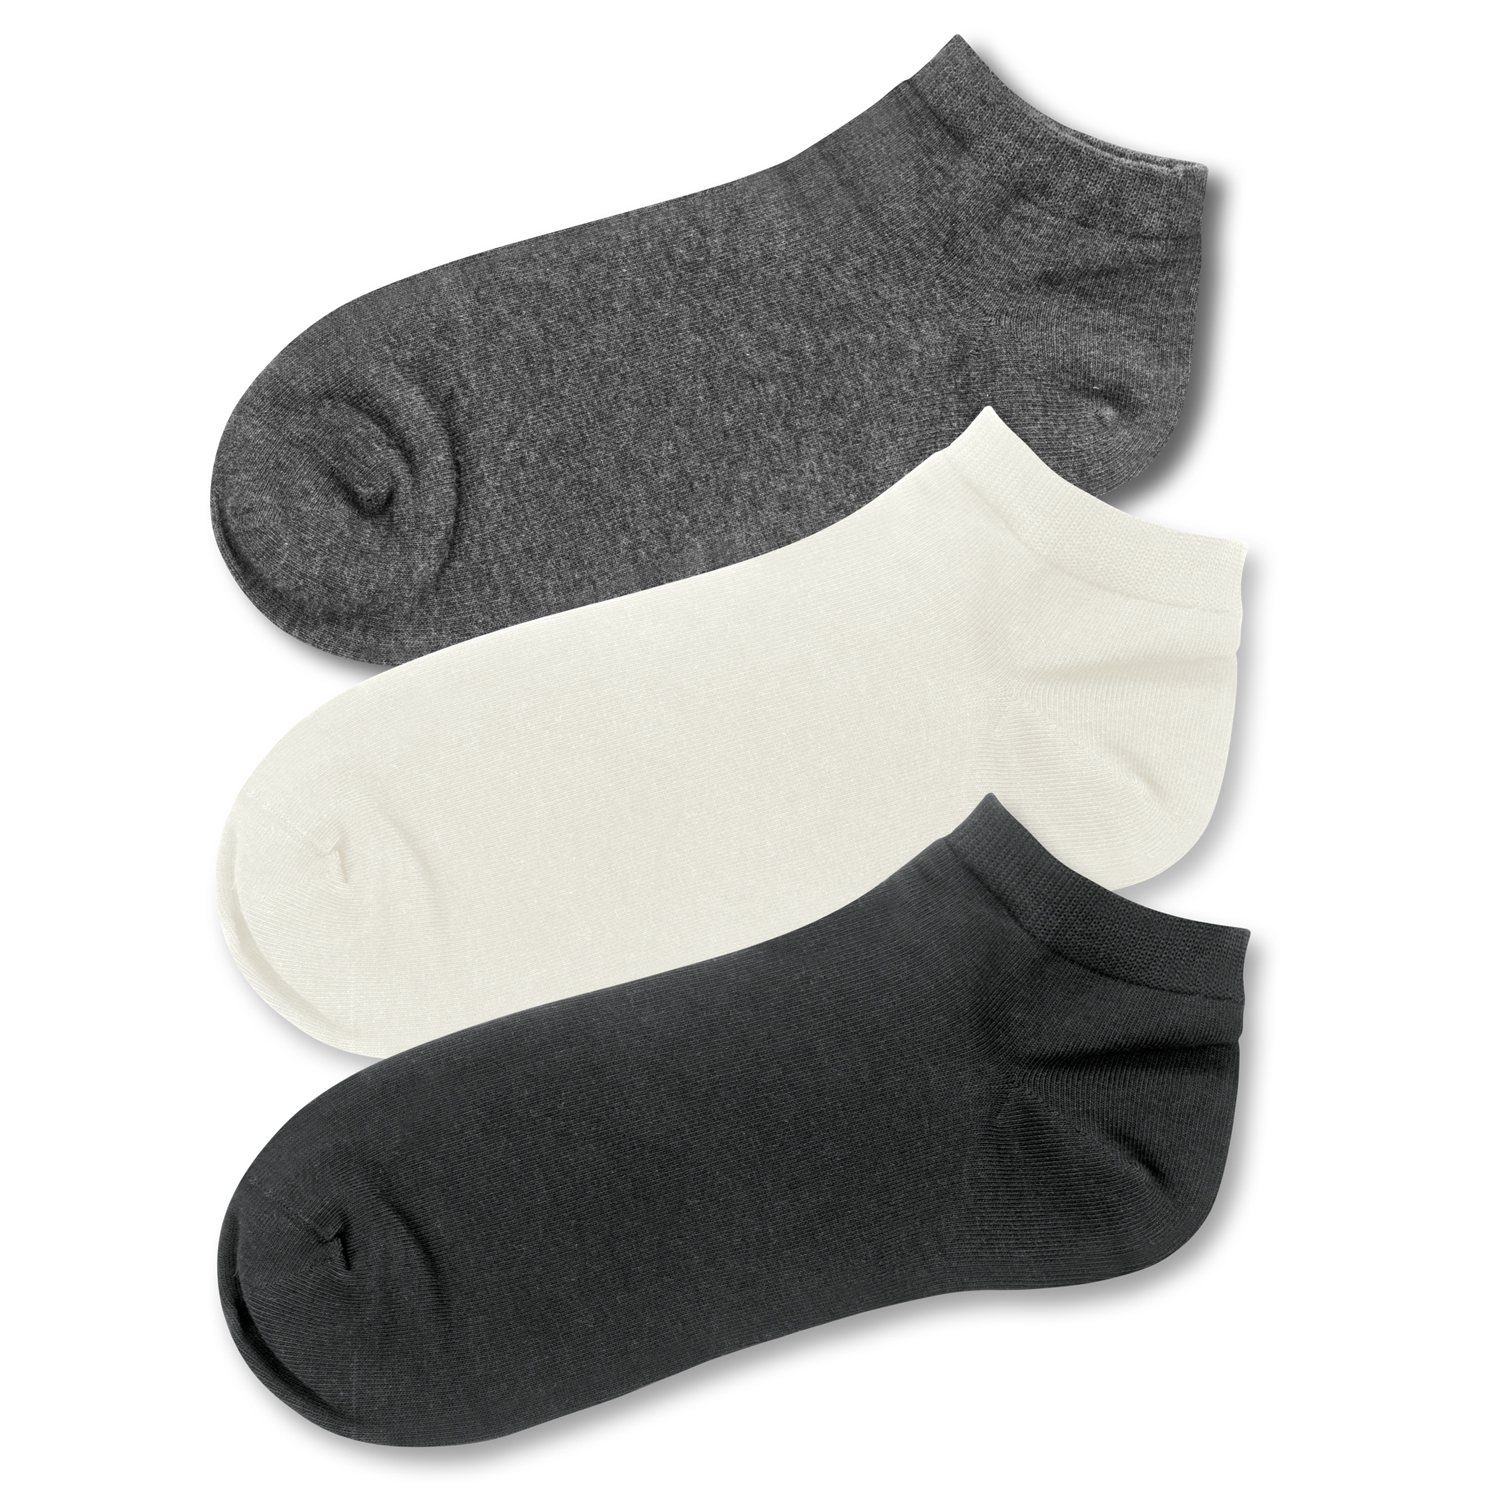 TRENDS | June Ankle Socks